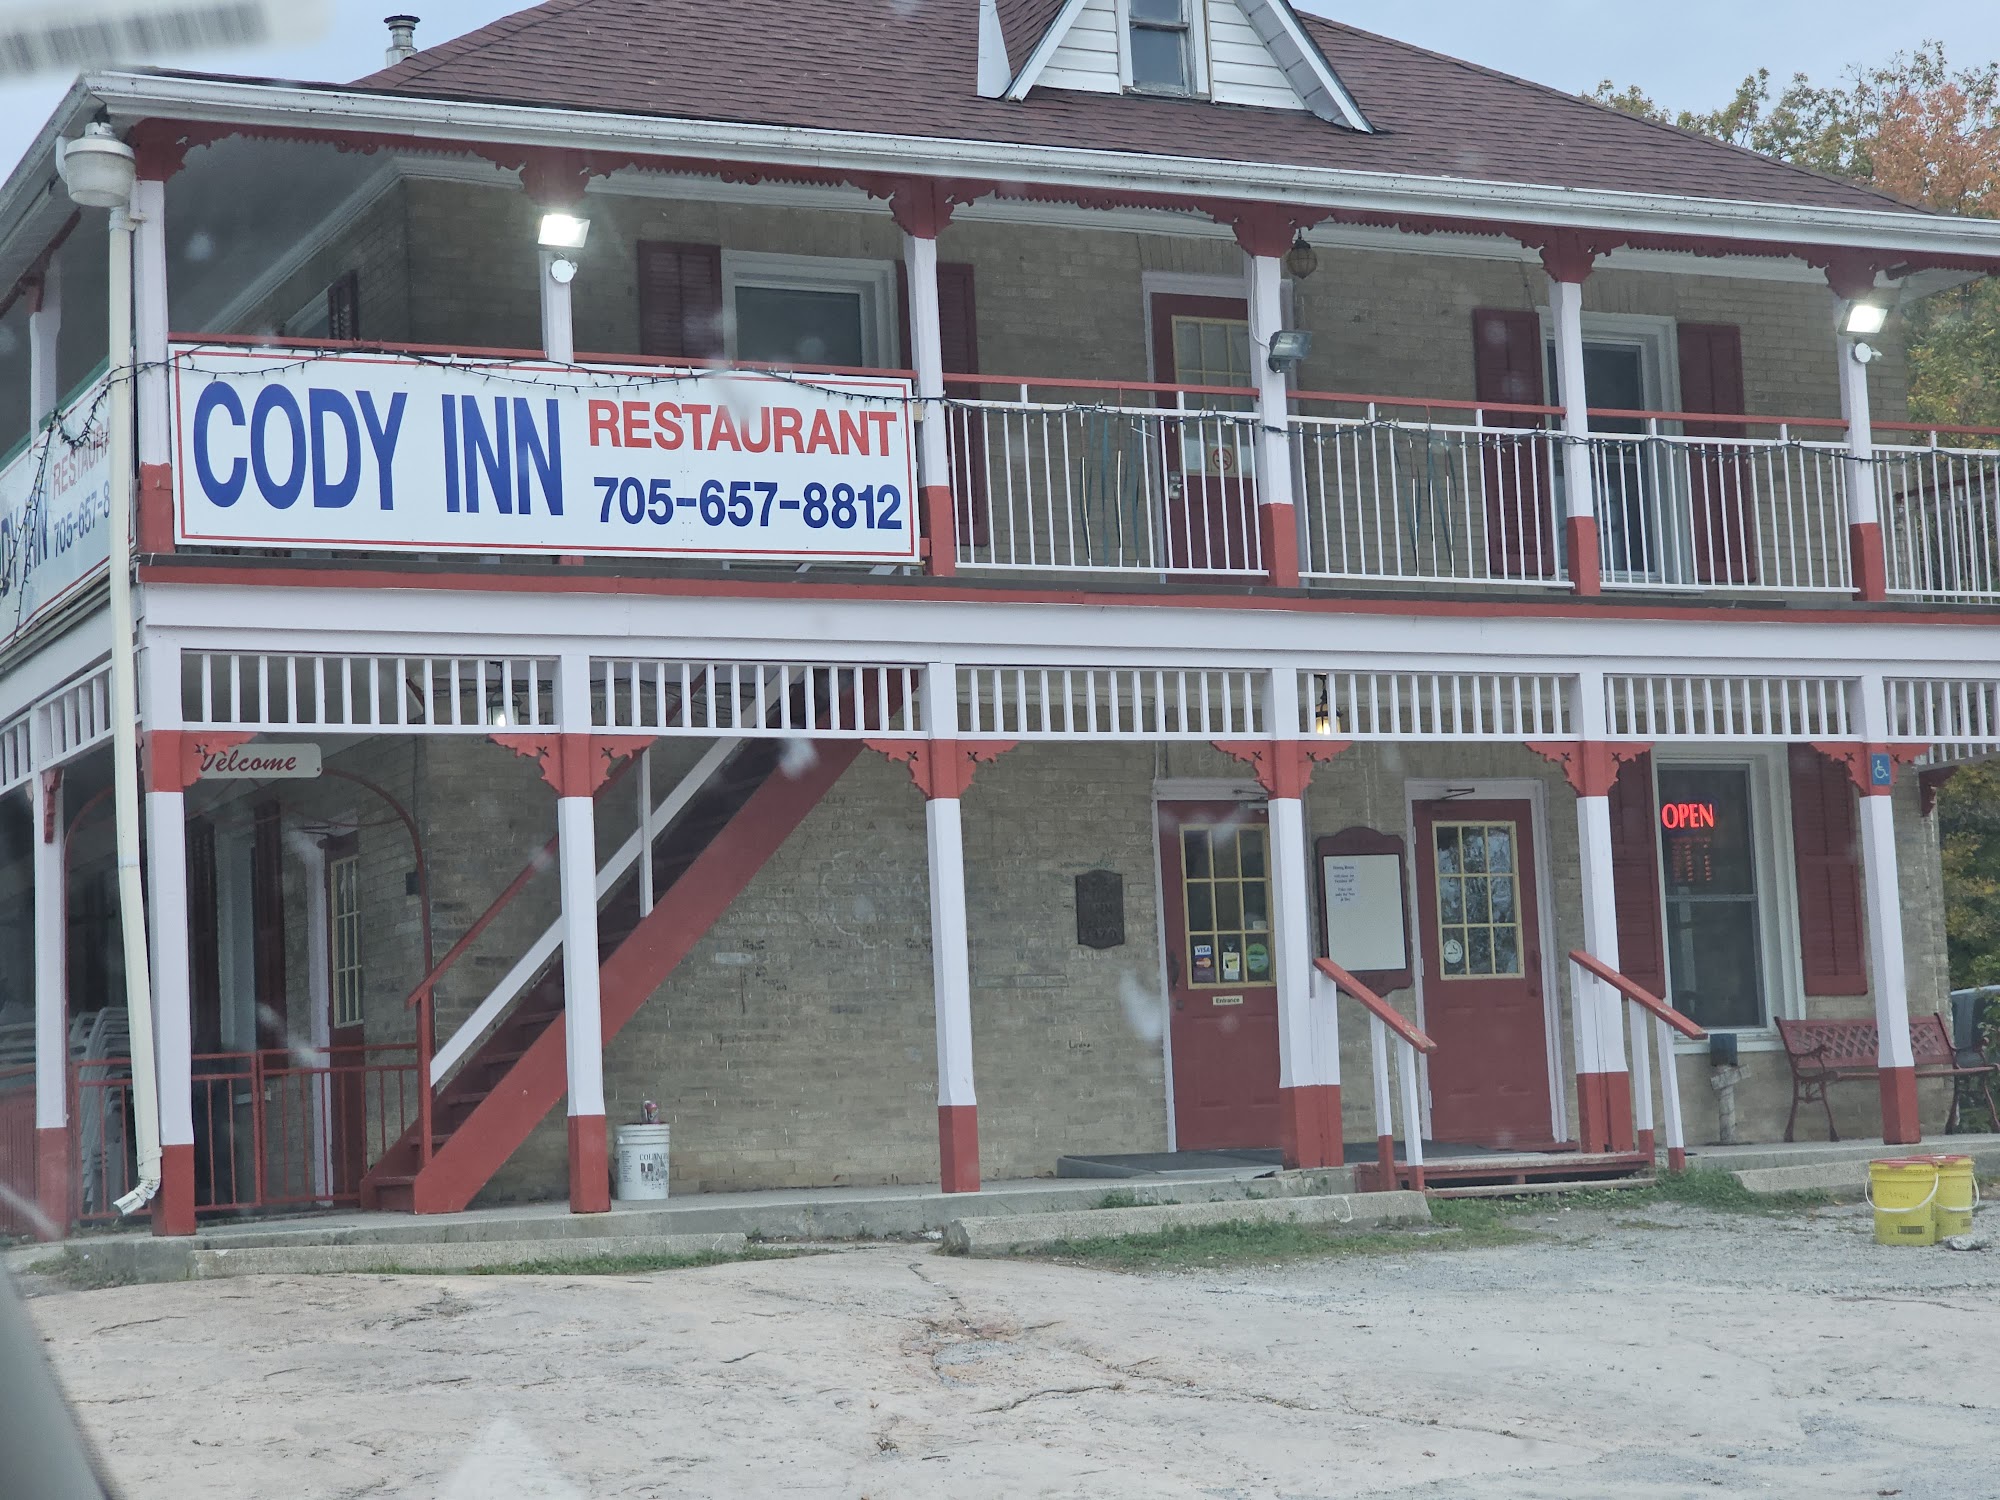 Cody Inn Restaurant